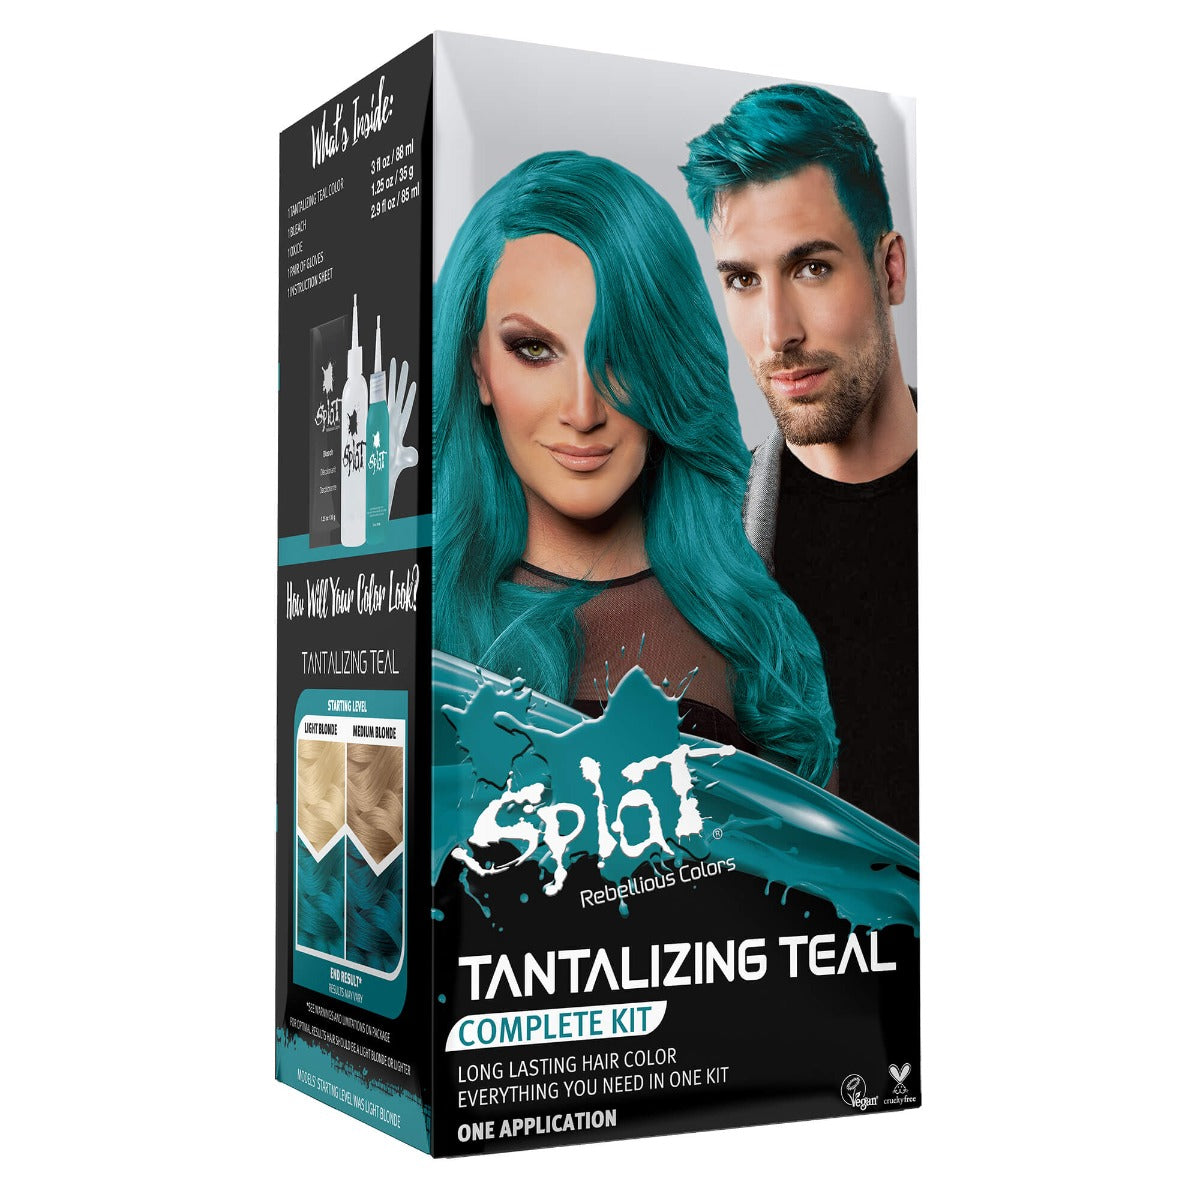 Kit completo original con decolorante y tinte de cabello semipermanente - Tantalizing Teal